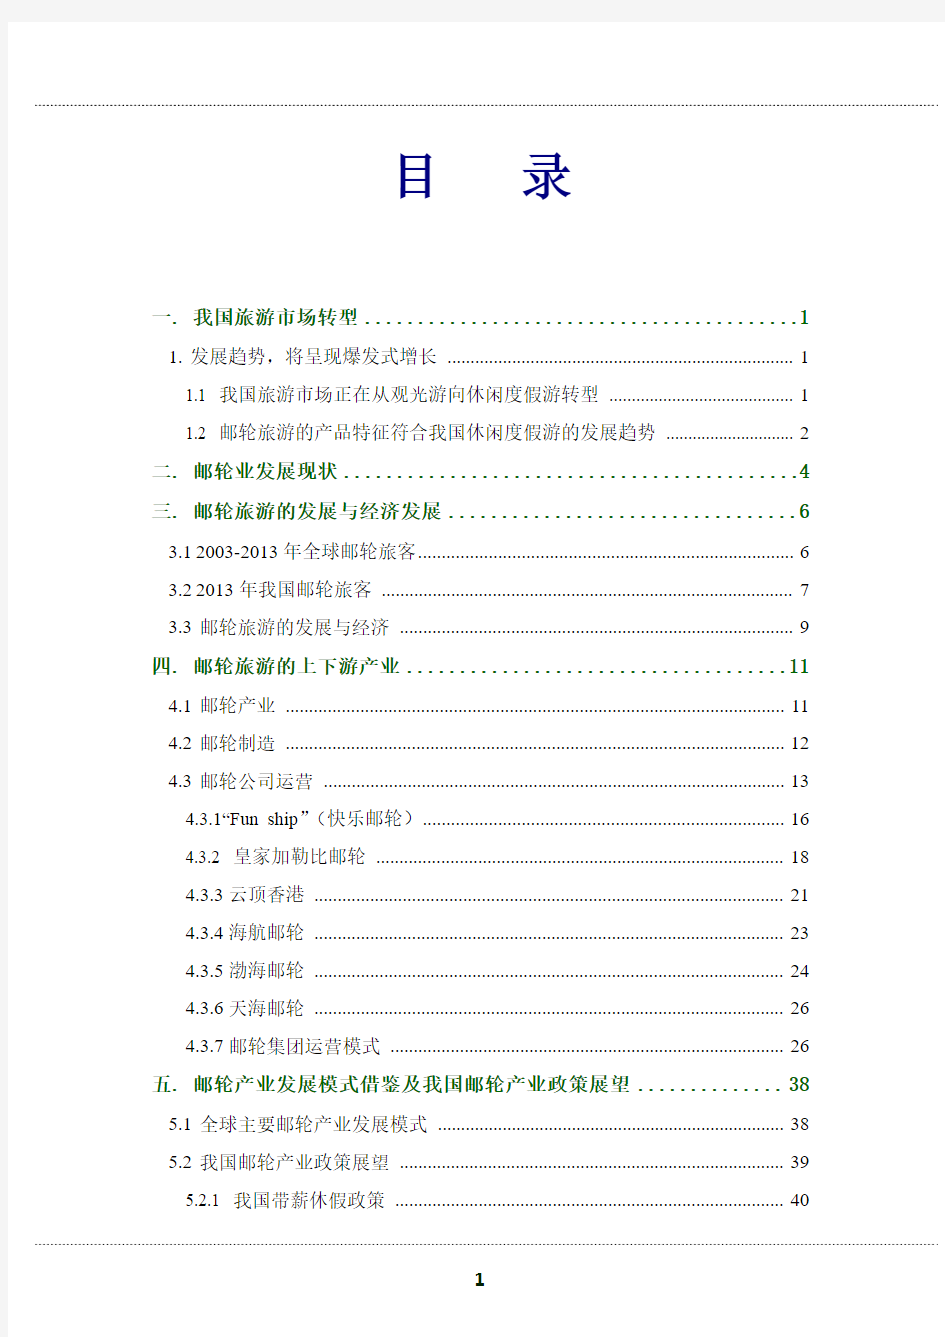 2014年中国邮轮行业研究报告